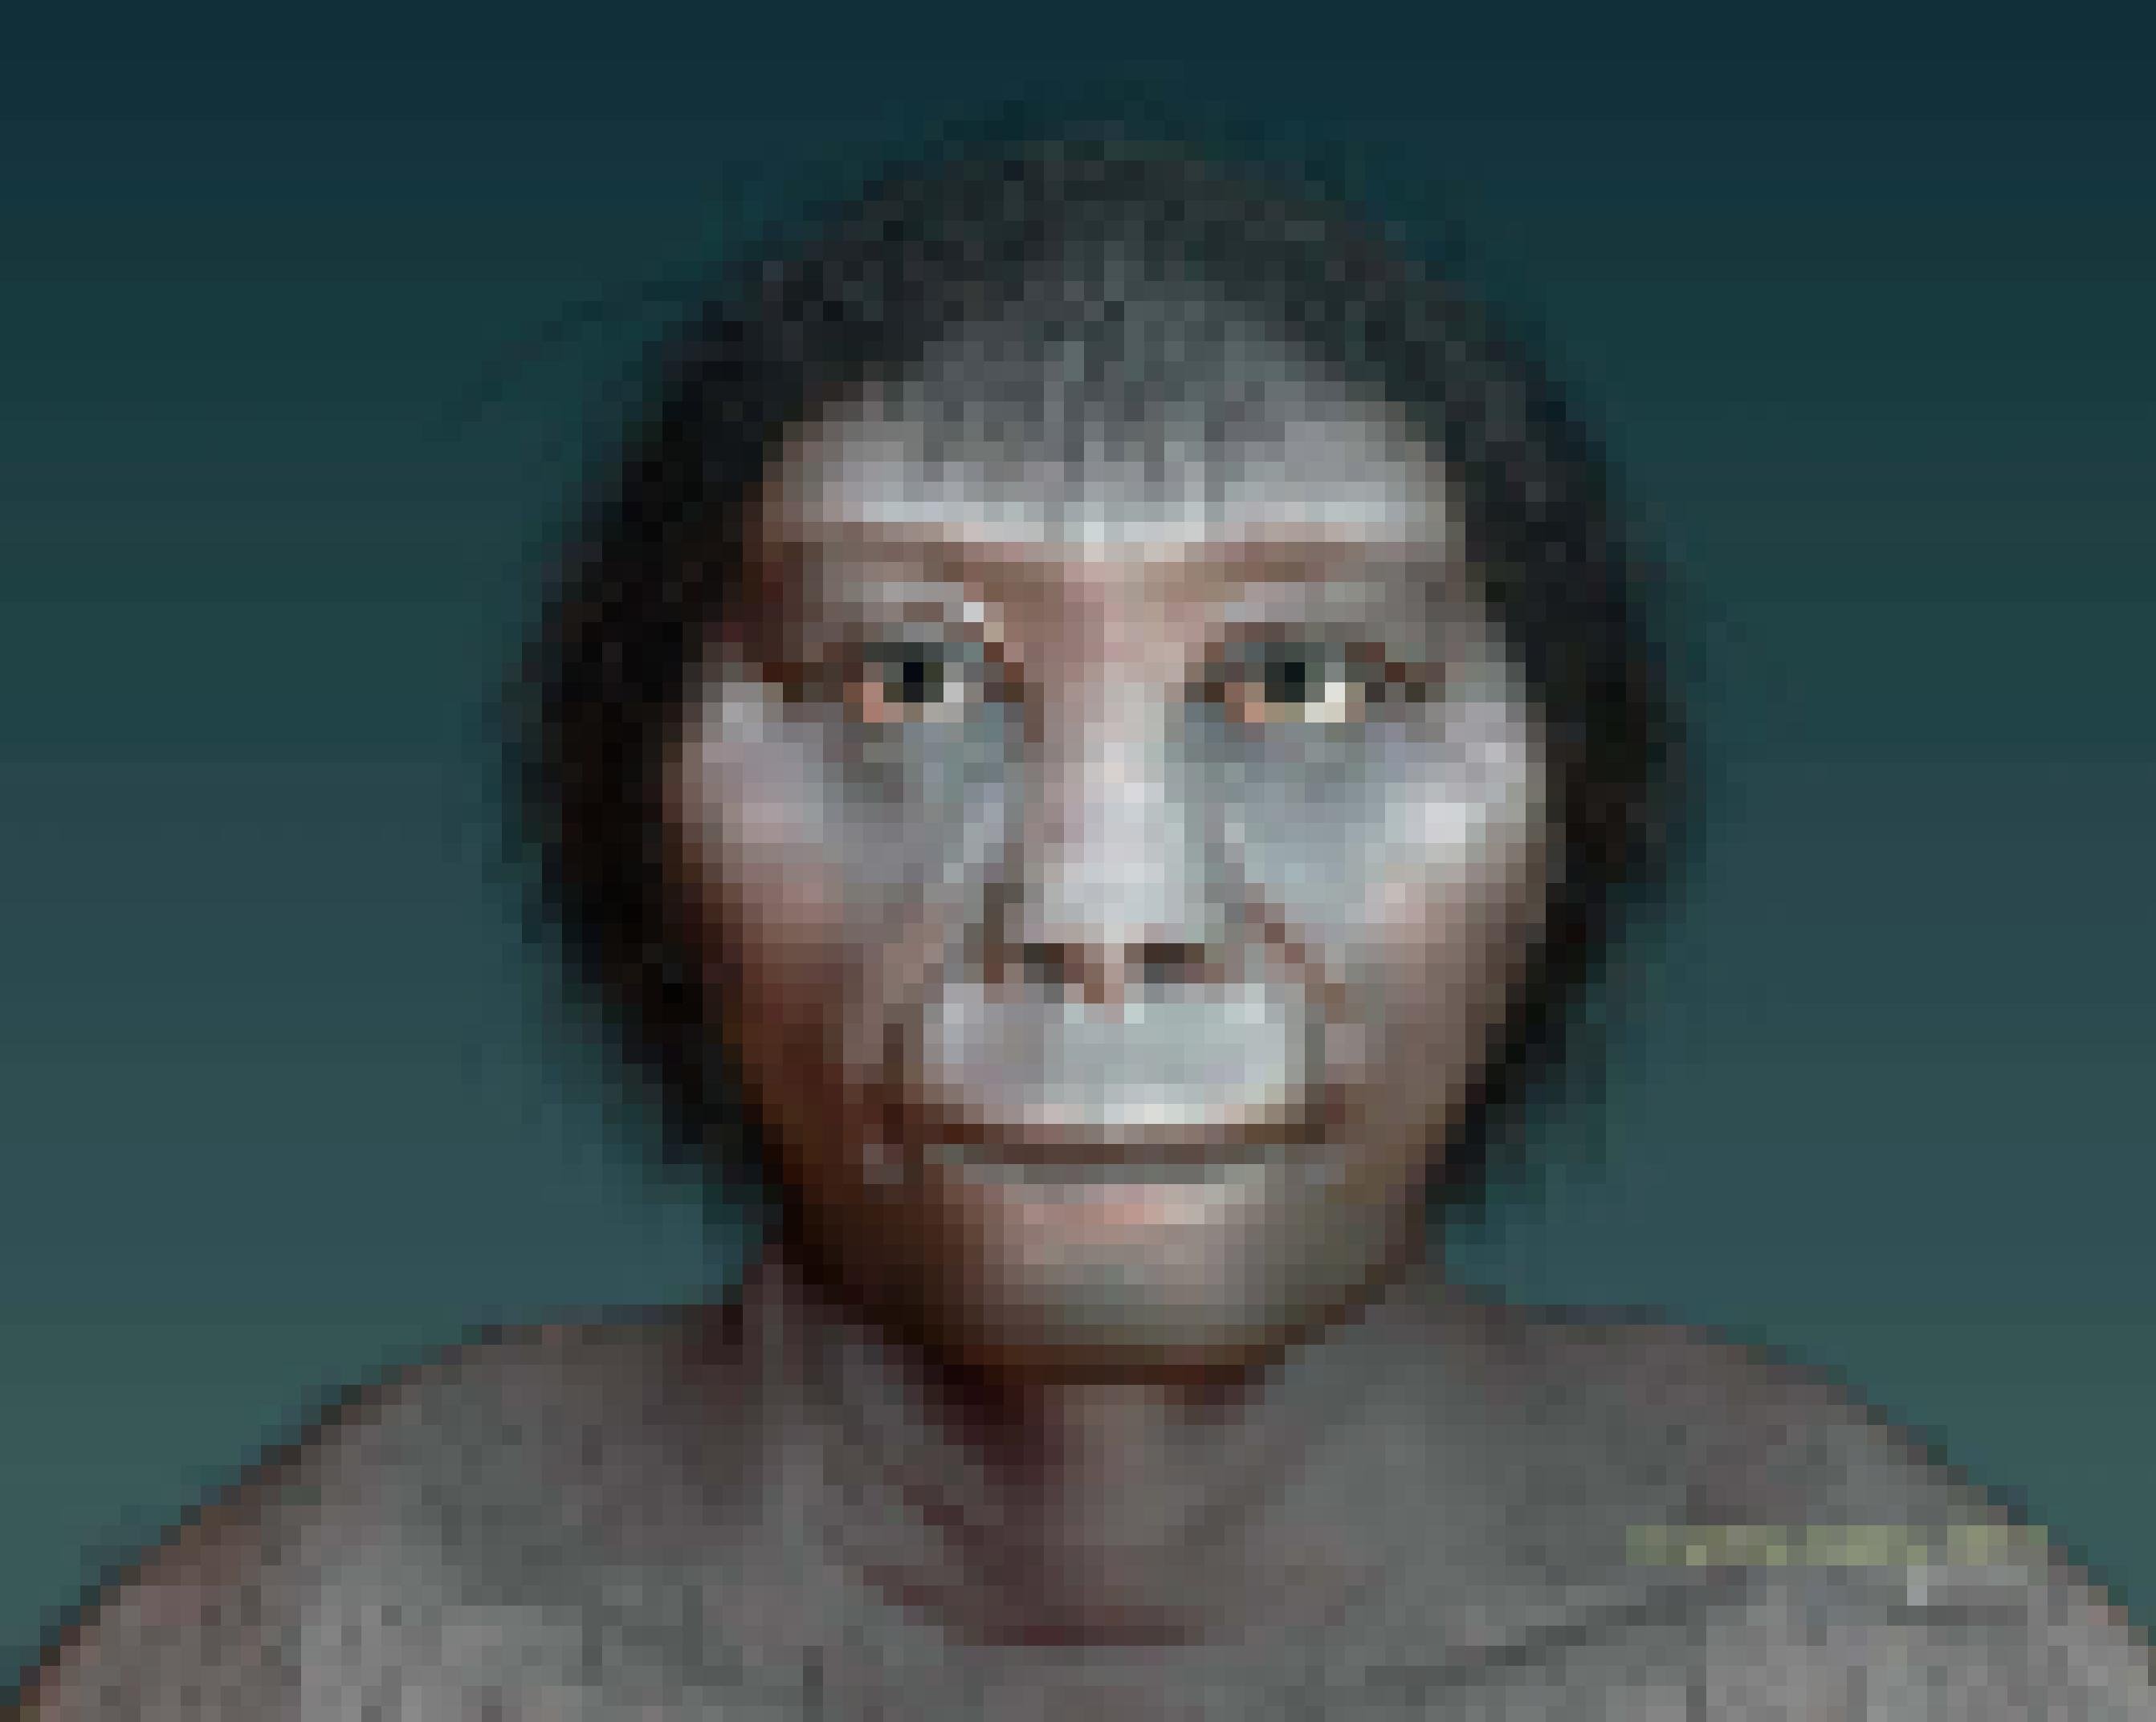 Gezeigt wird die künstlerische Darstellung des Zwergmenschen Homo floresiensis, auch Hobbit genannt. Sein Gesicht wirkt rundlich und sehr urtümlich. Neuen Forschungen von Wissenschaftlern der Australian National University zufolge könnte es sich bei dem Wesen um eine Geschwister-Art des Frühmenschen Homo habilis handeln.